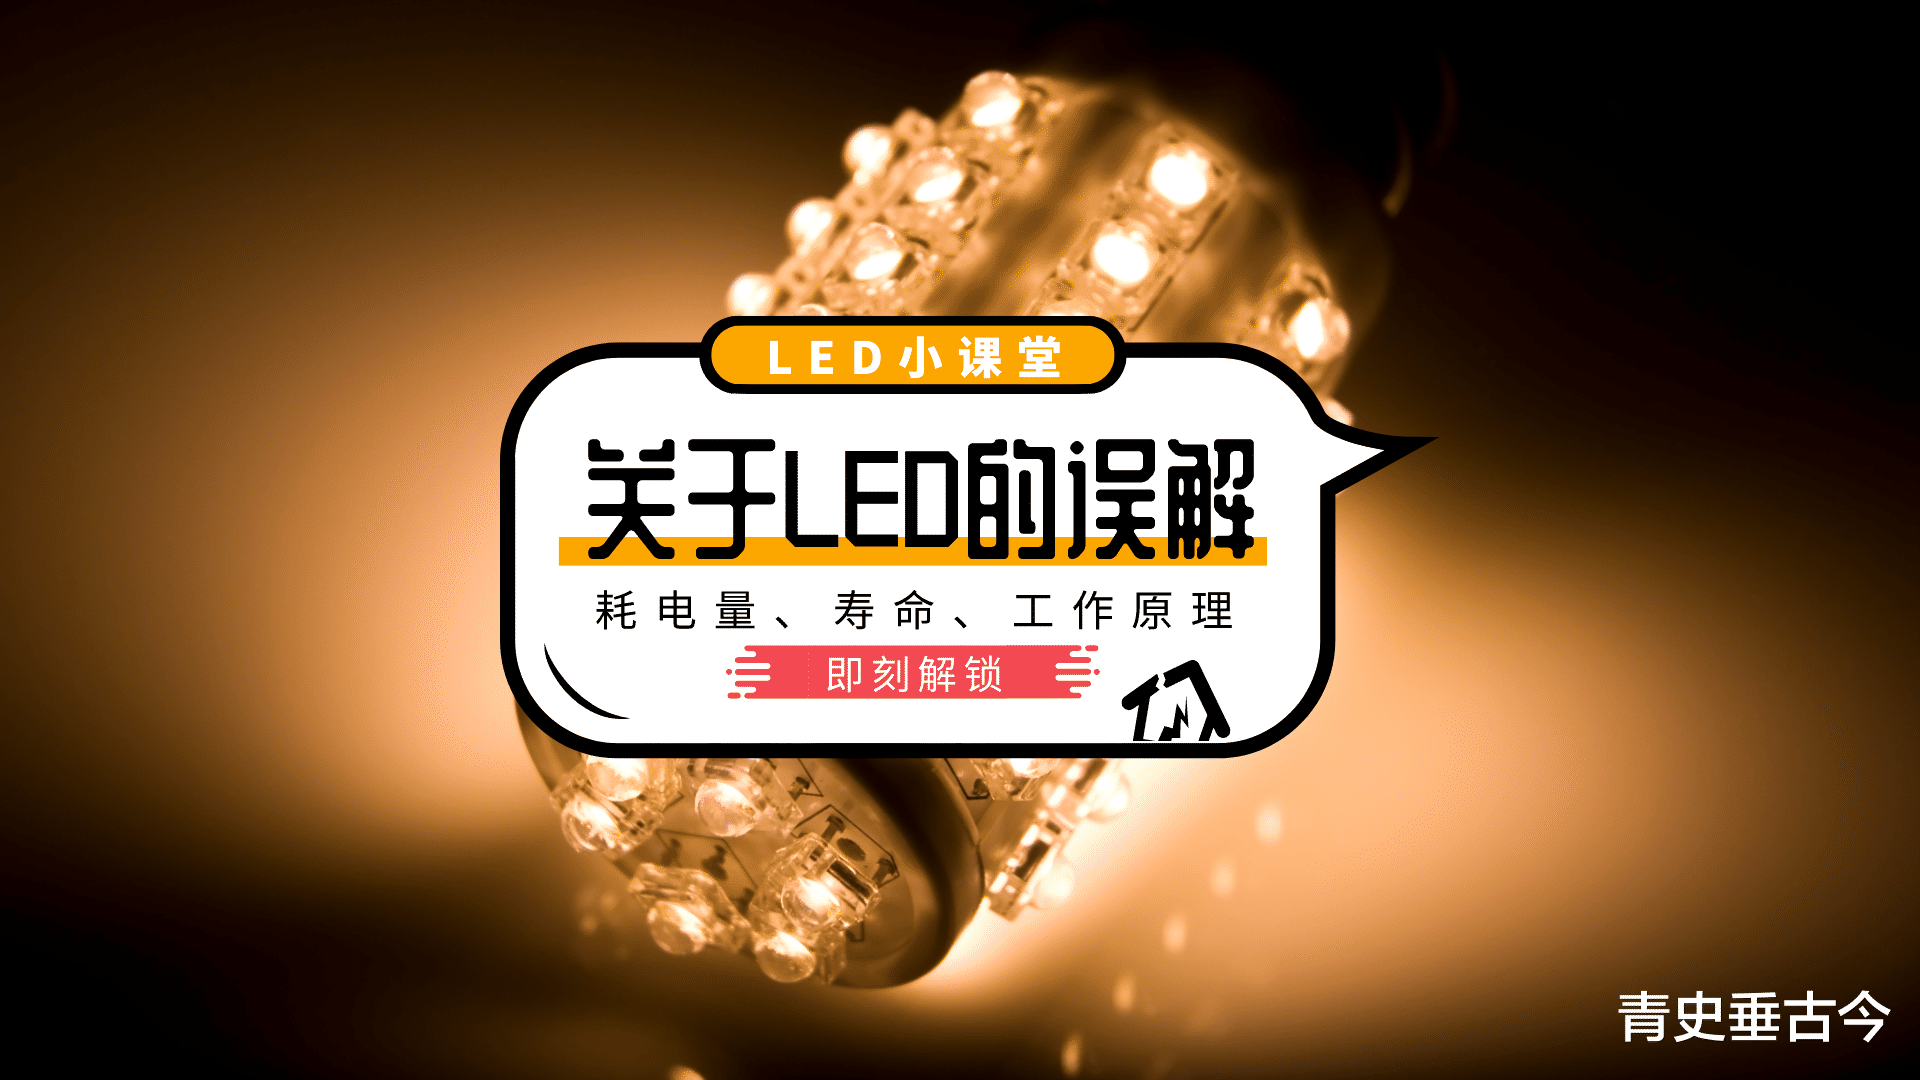 led灯|?LED灯“寿命短还费电”，为什么商家却口口声声说它是节能产品？